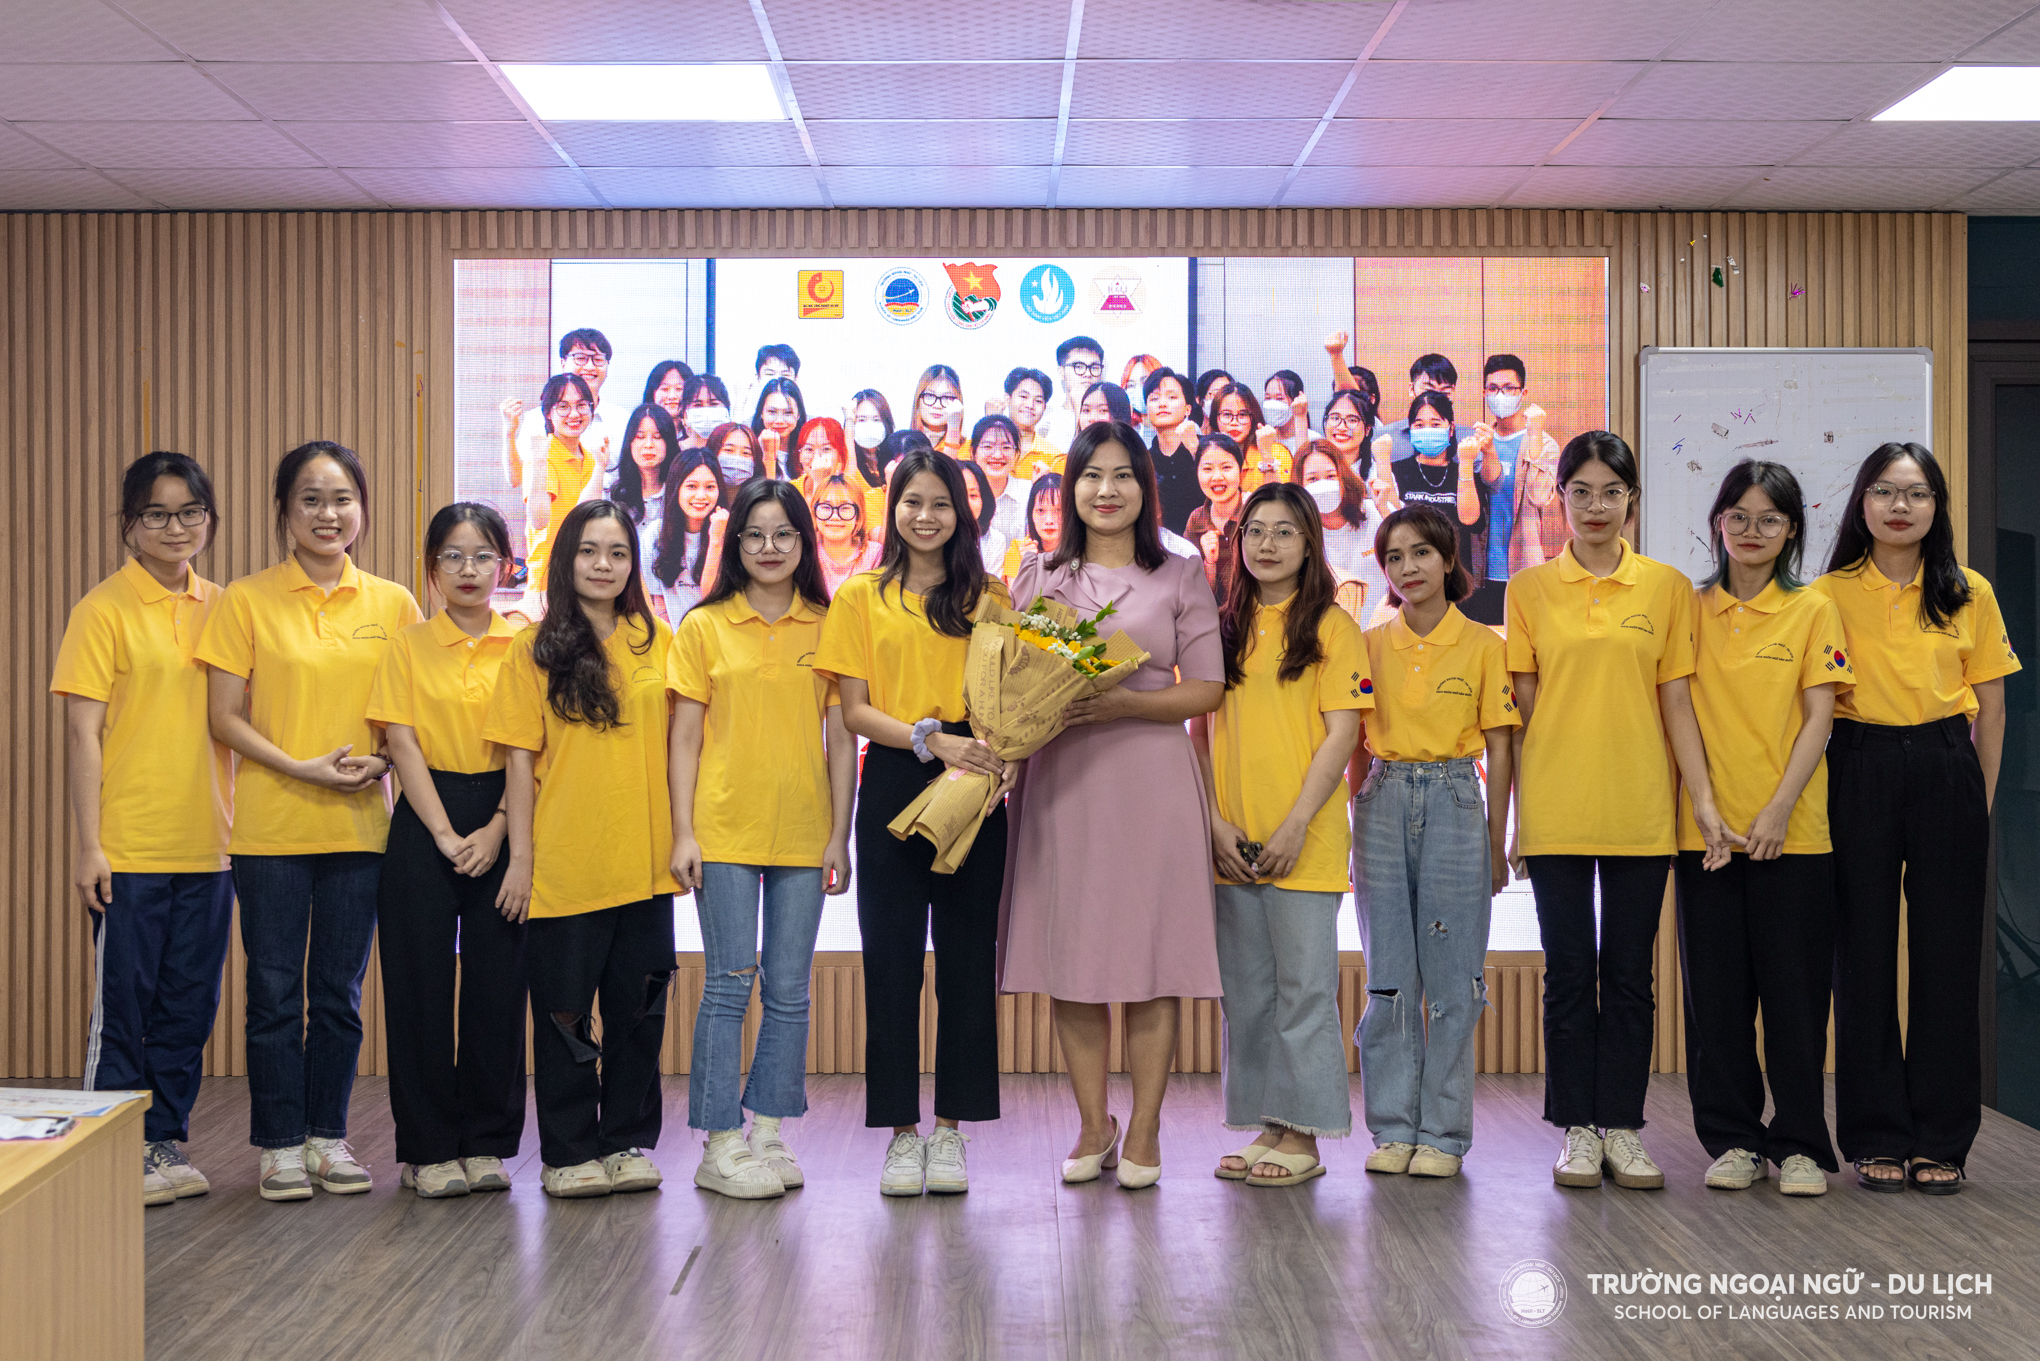 Hội nghị hiệp thương Câu lạc bộ tiếng Hàn Quốc K4U Trường Ngoại Ngữ - Du Lịch